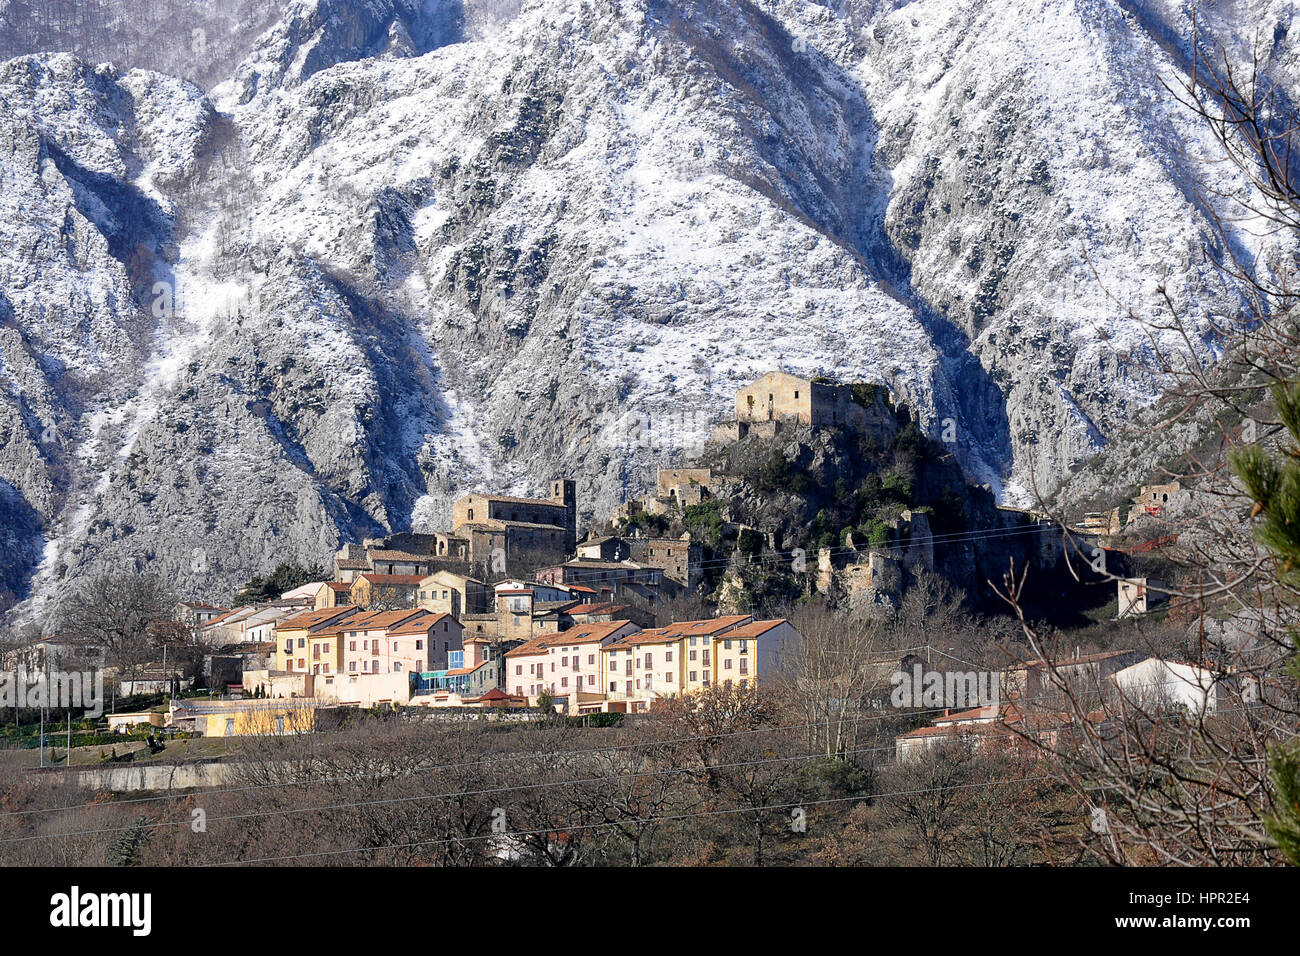 Le village Rocchetta Alta dans la région de Molise (Italie) est en grande partie ruiné. Certaines maisons sont en cours de rénovation et sont utilisés comme maisons de vacances. Banque D'Images